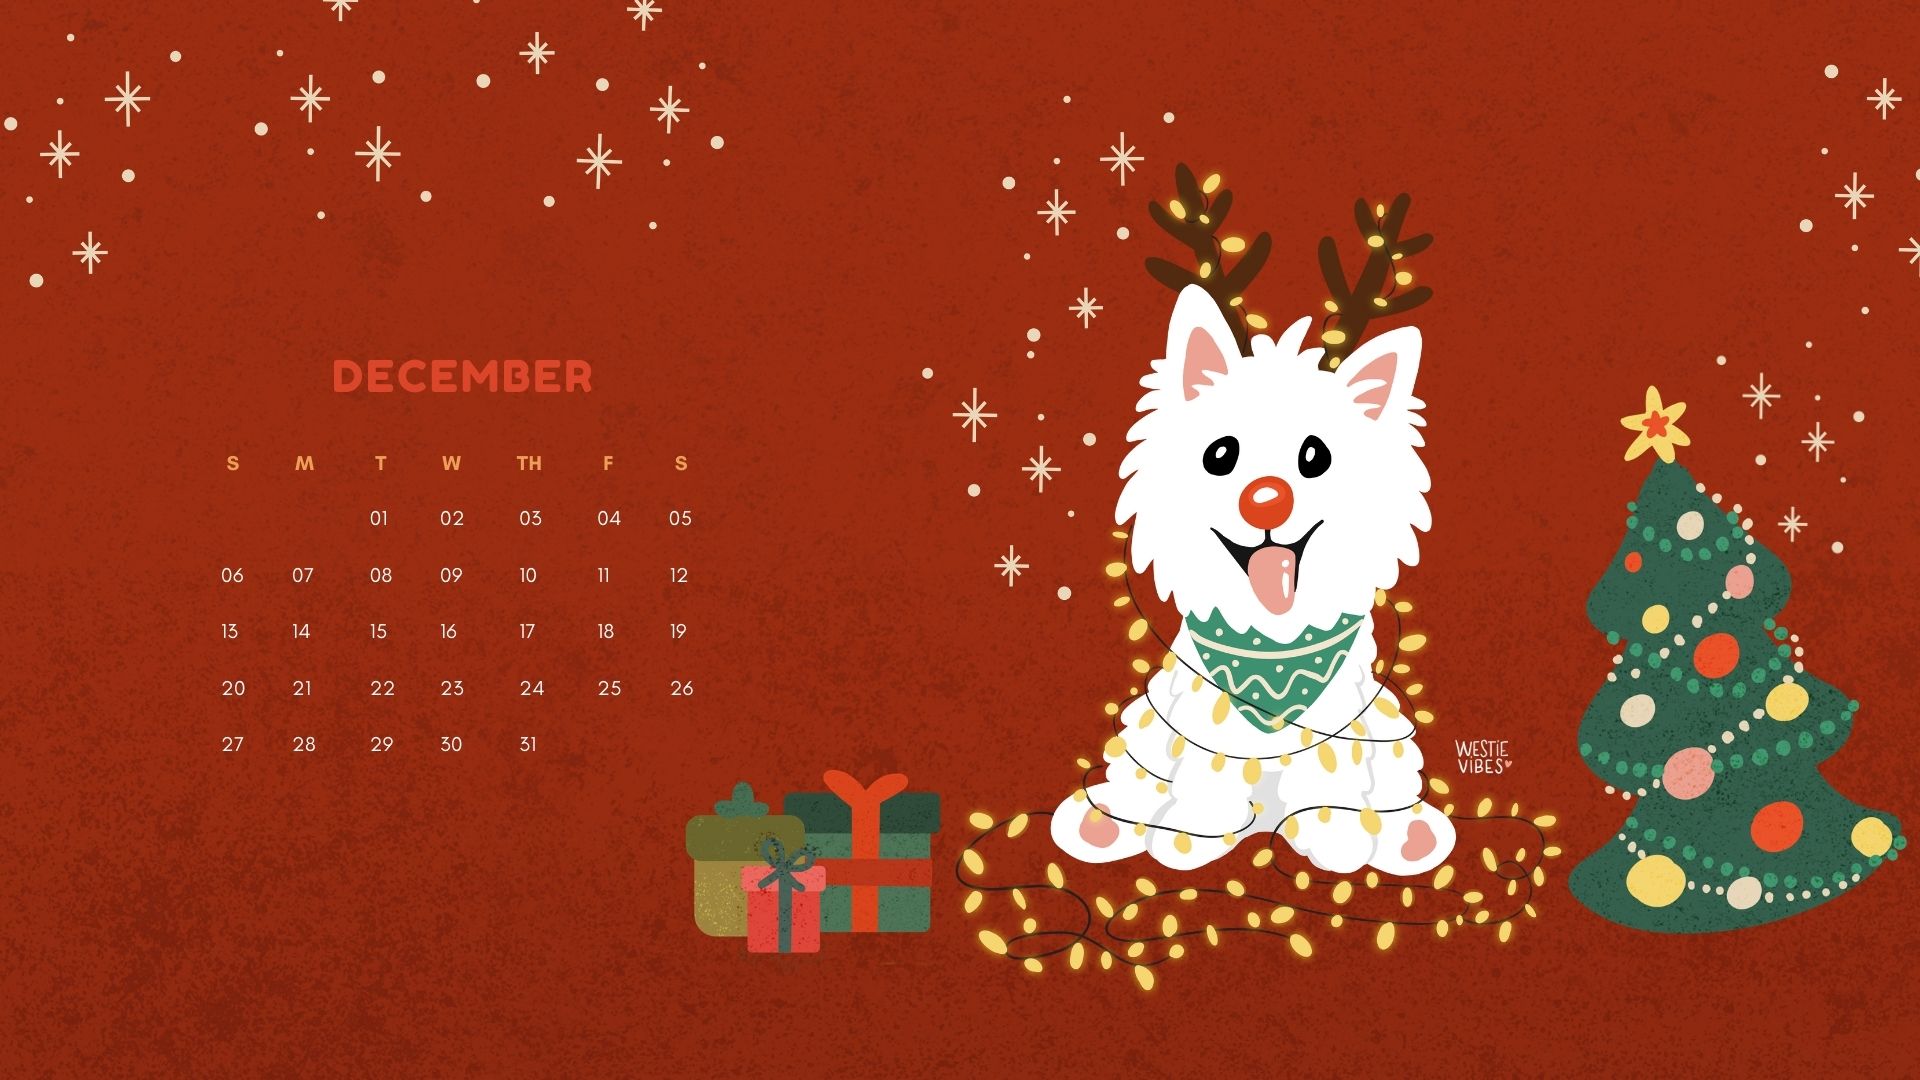 December Calendar Wallpaper Westie Vibes